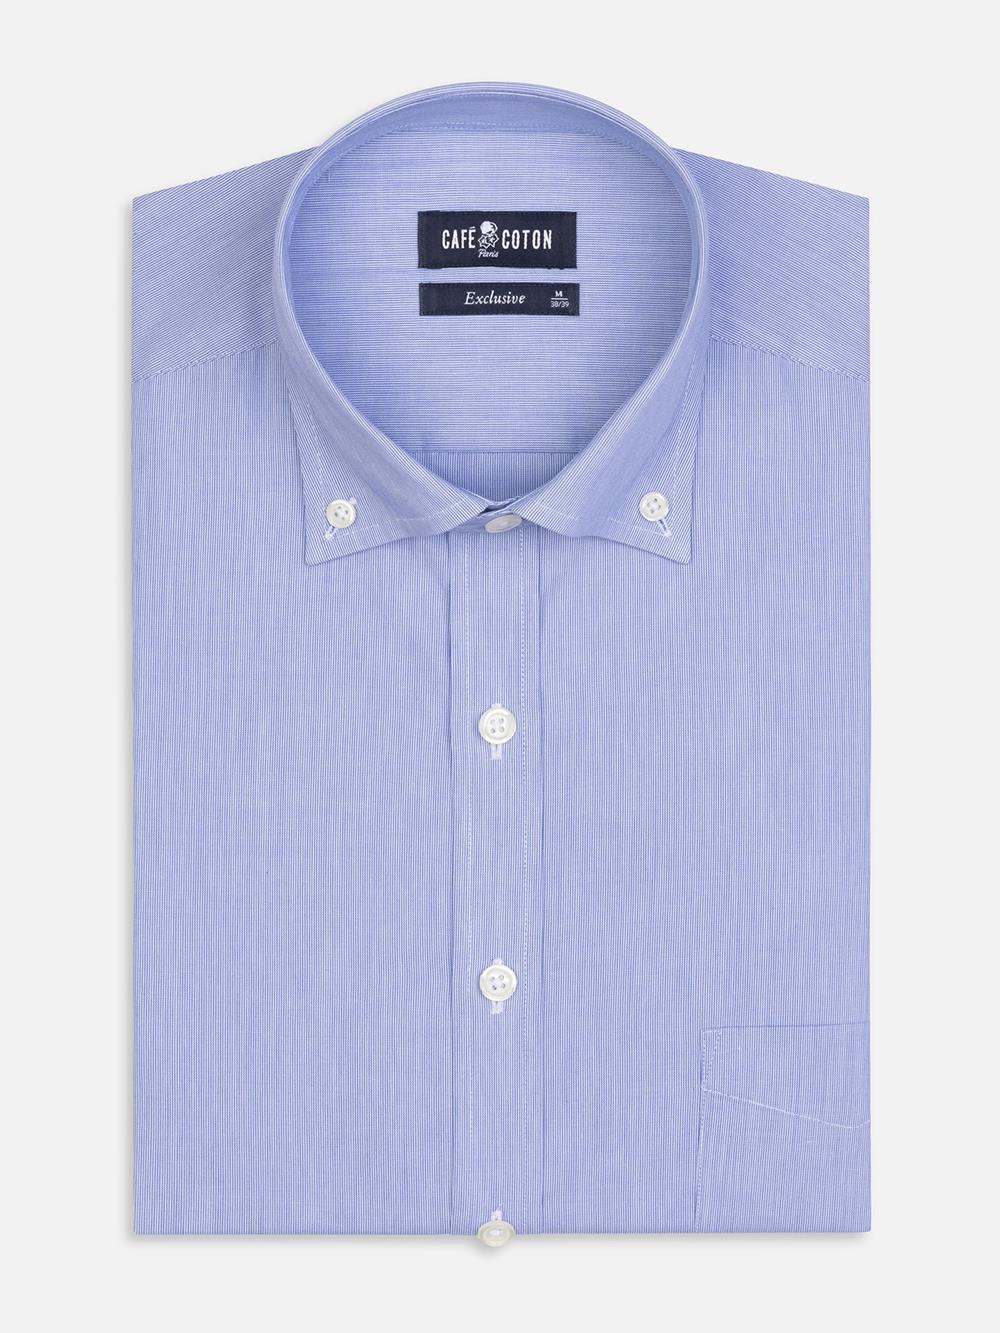 Hemd mit tausend Streifen blau - Buttondown Kragen